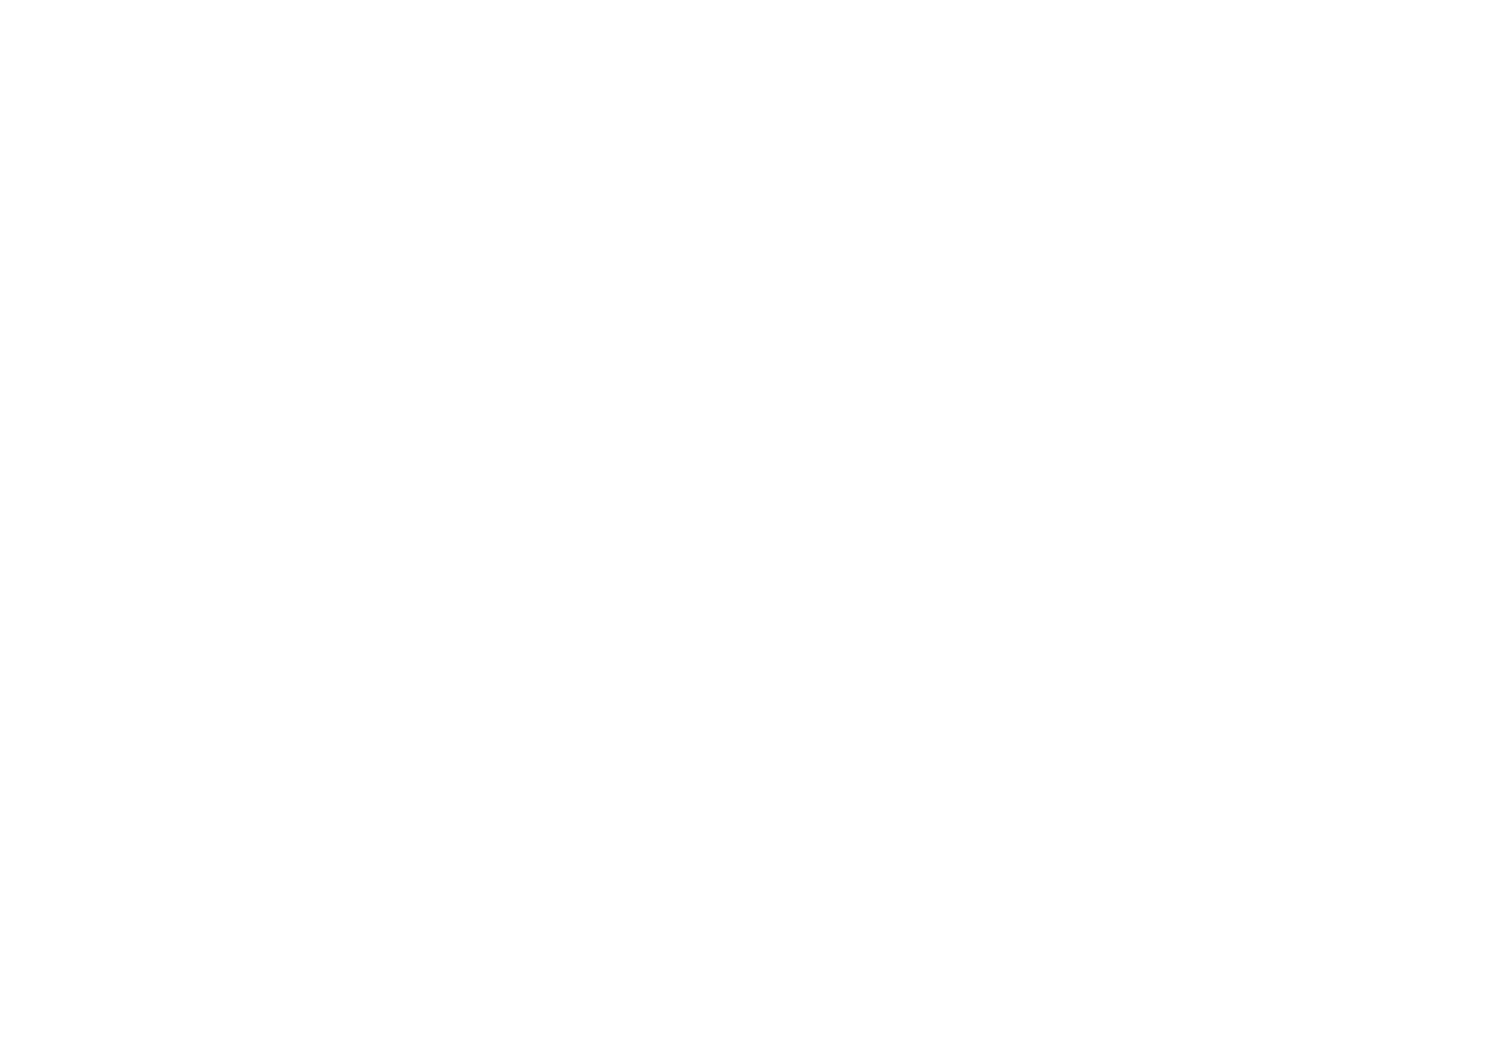 Best Feeling Forever